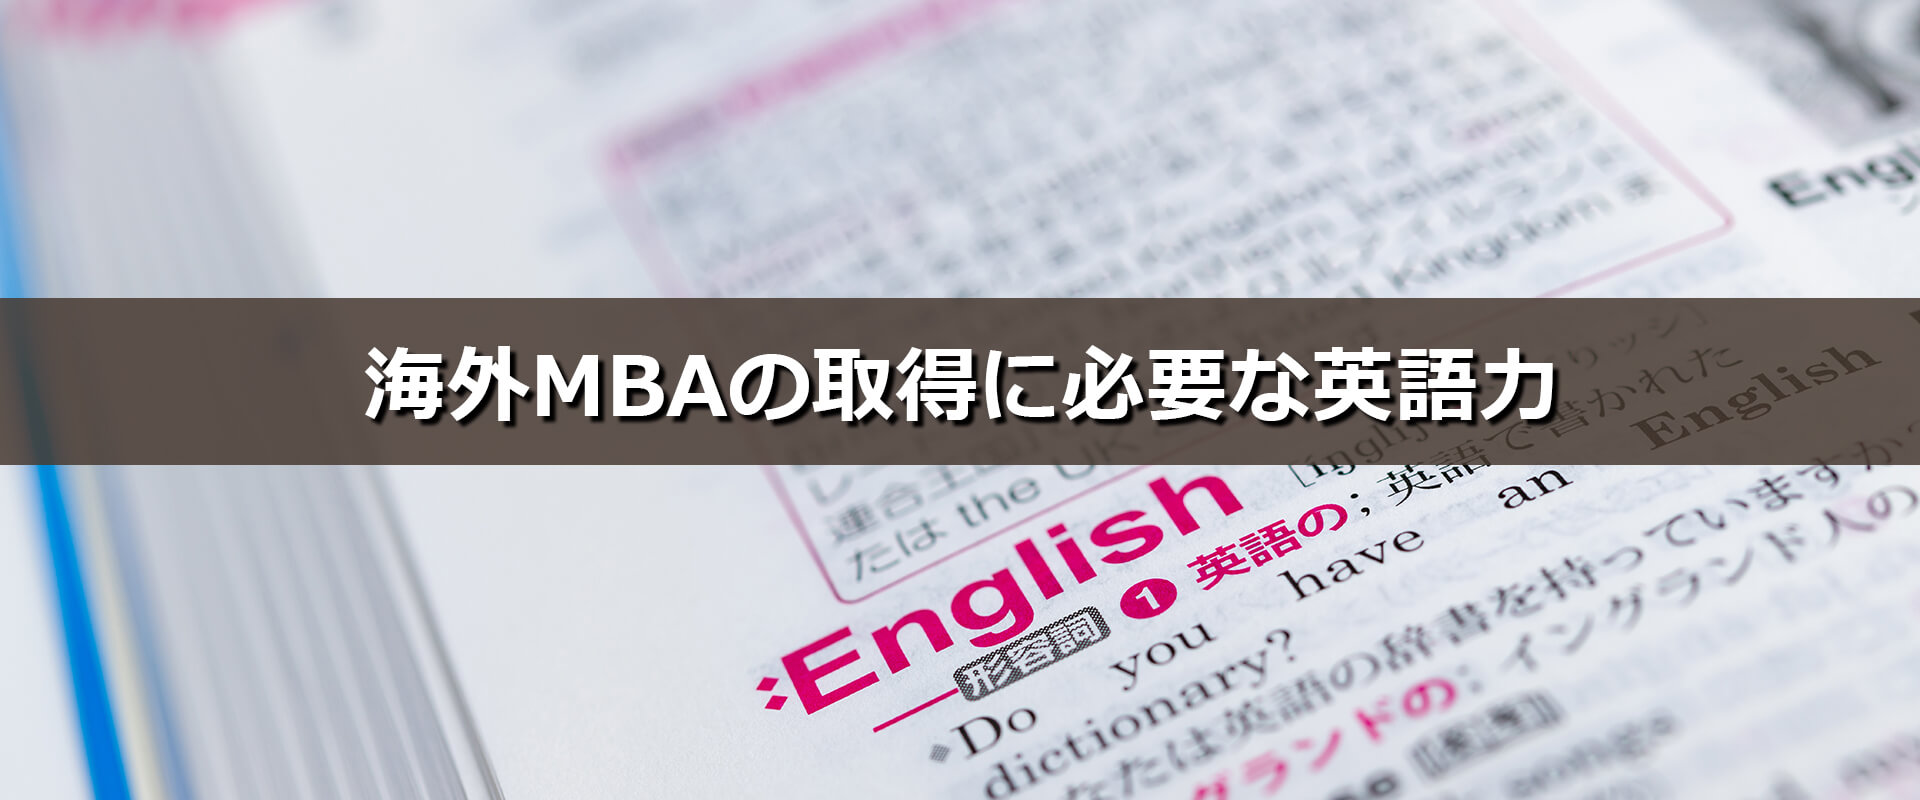 海外mbaの取得に必要な英語力 Online Mba Exejapan Business School